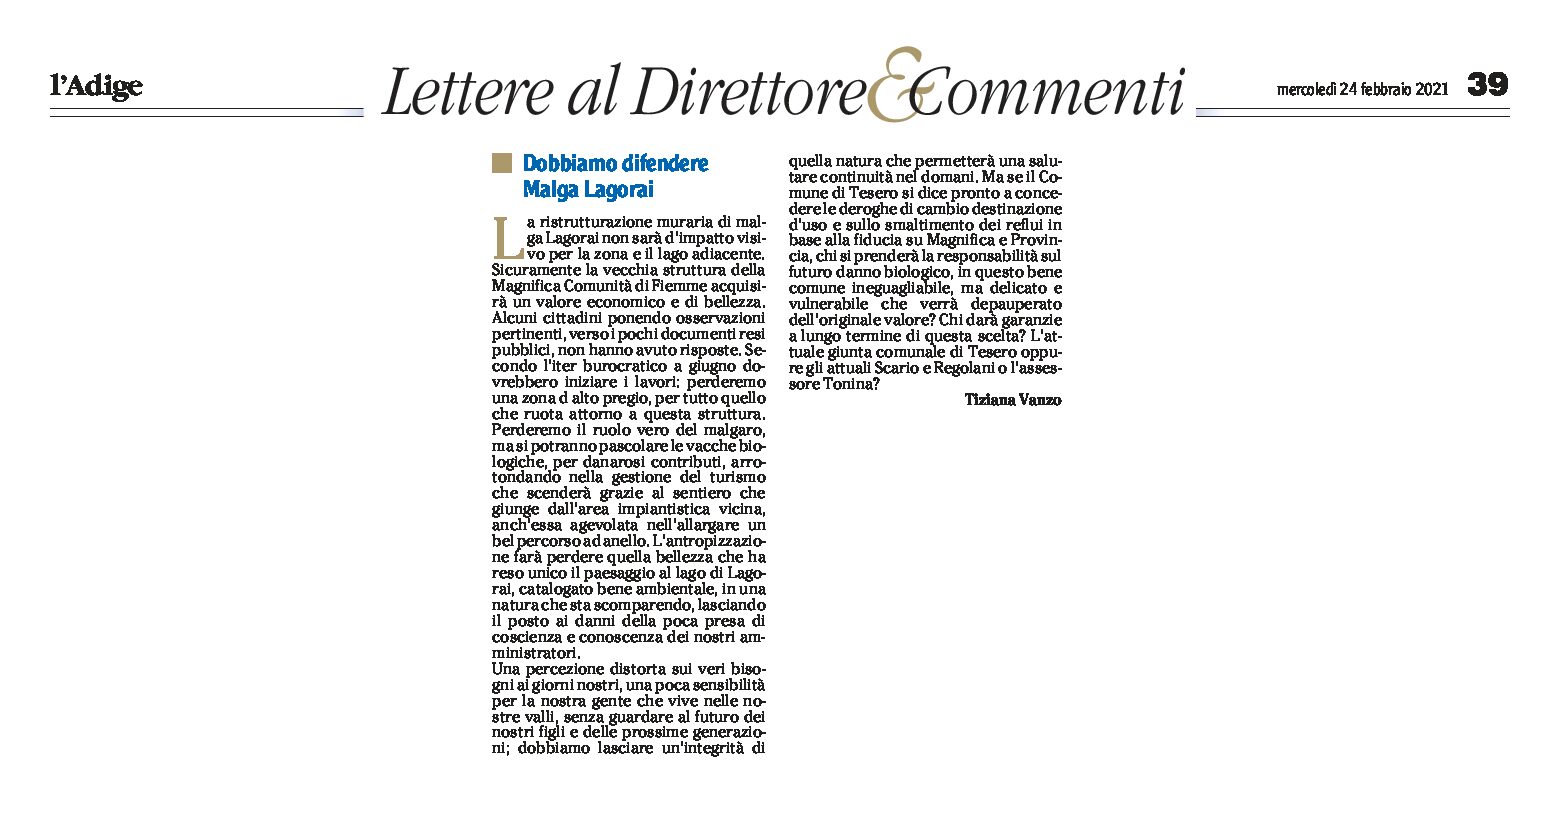 Dobbiamo difendere Malga Lagorai, lettera di Tiziana Vanzo